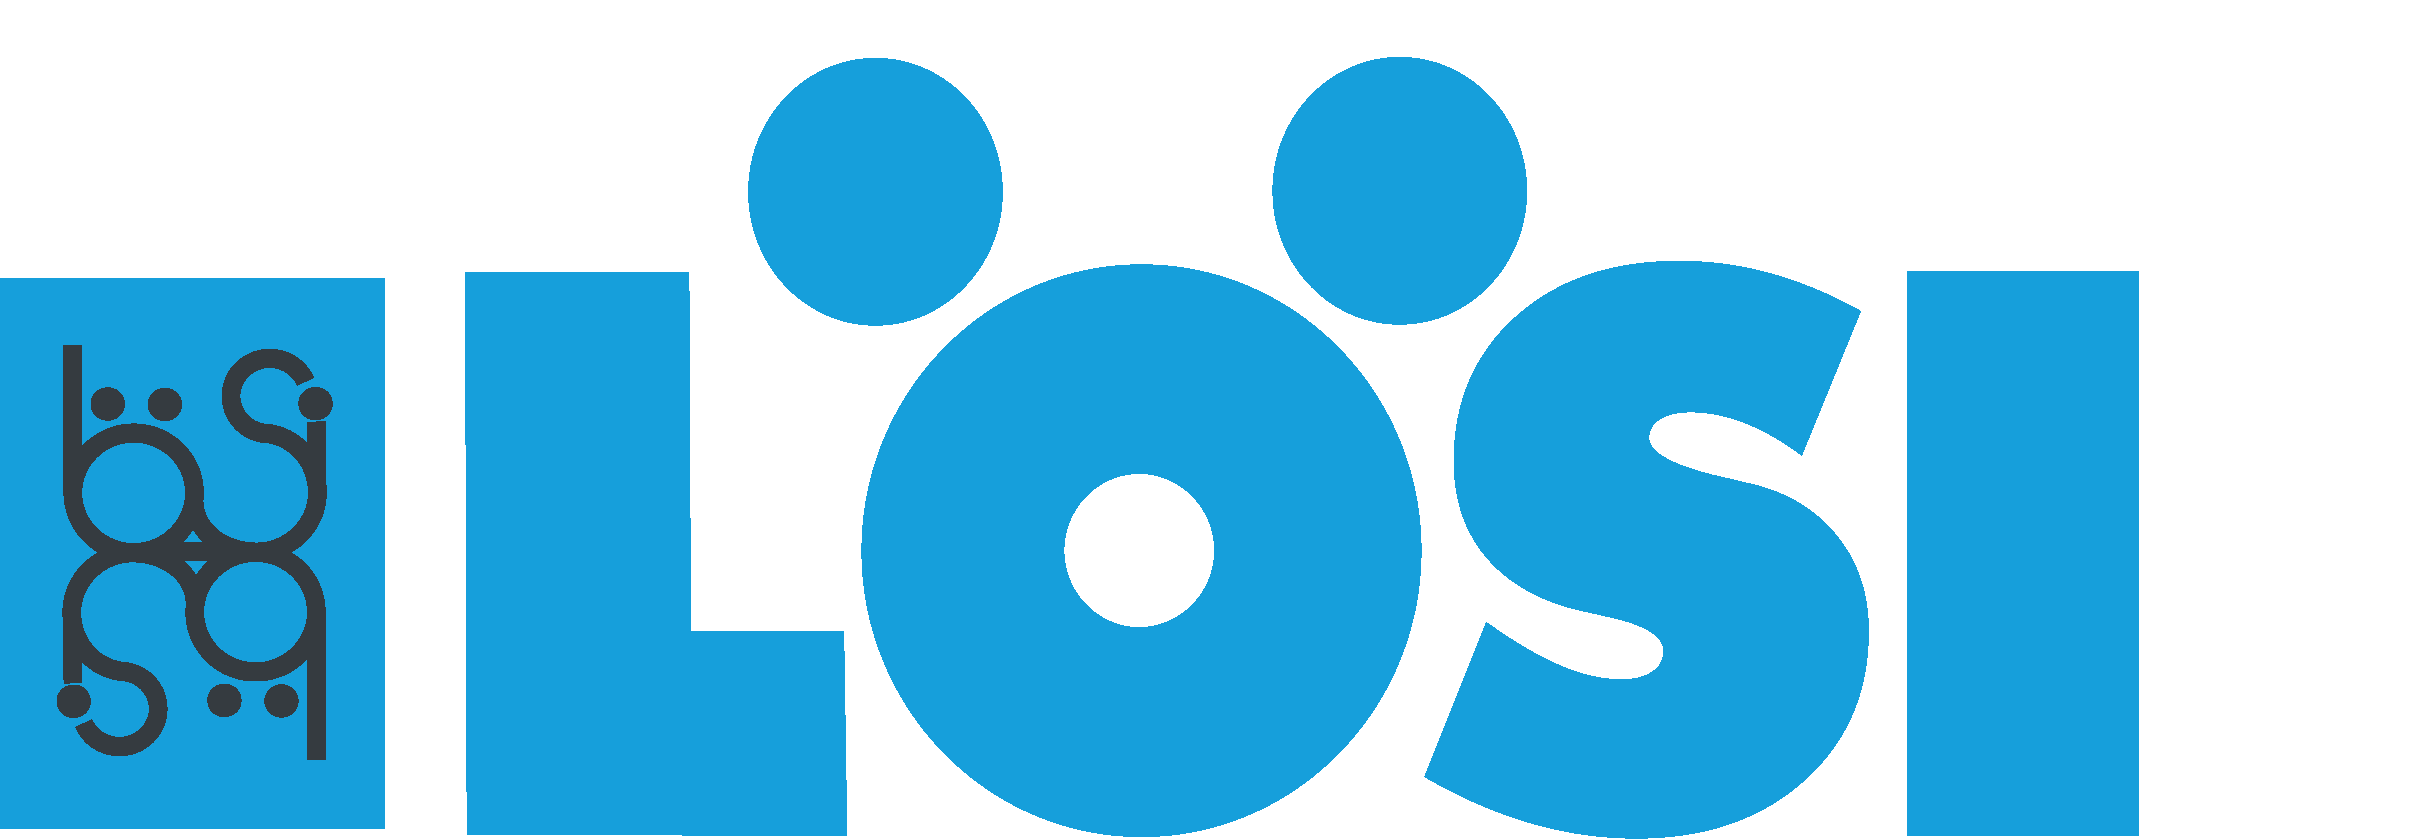 LöSi_Logo, blau, freigestellt